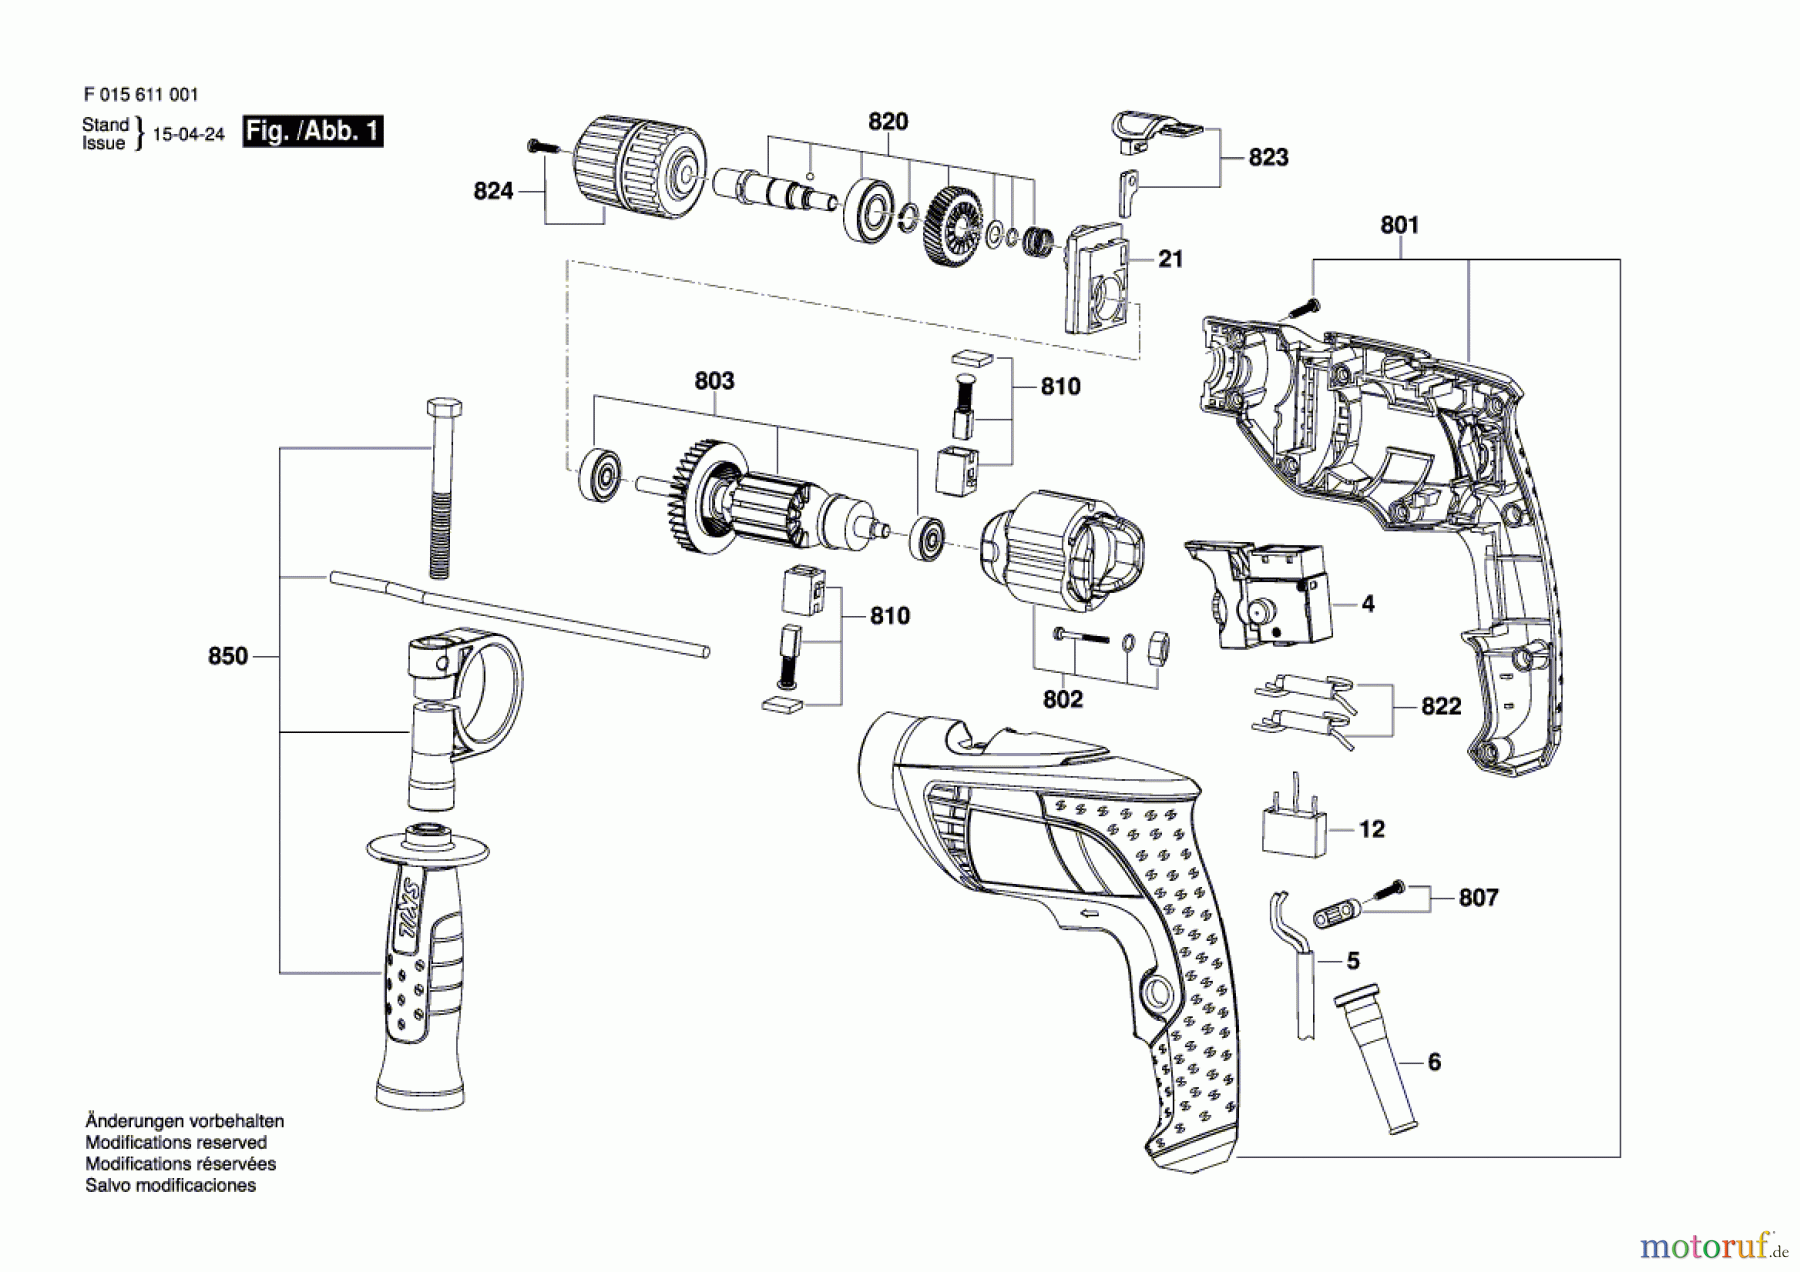  Bosch Werkzeug Schlagbohrmaschine 6110 Seite 1